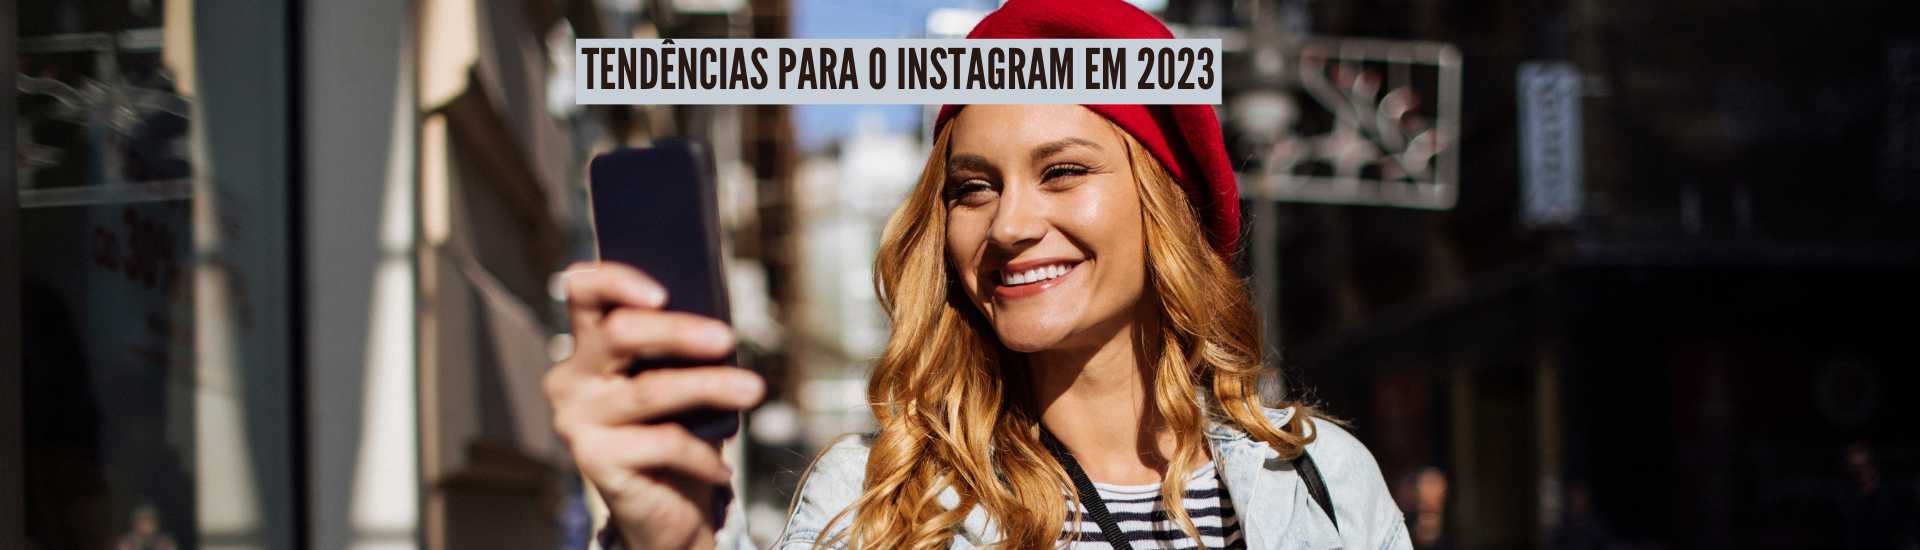 Tendencias para o Instragram em 2023 - Tendências do Instagram para 2023 em quatro pontos